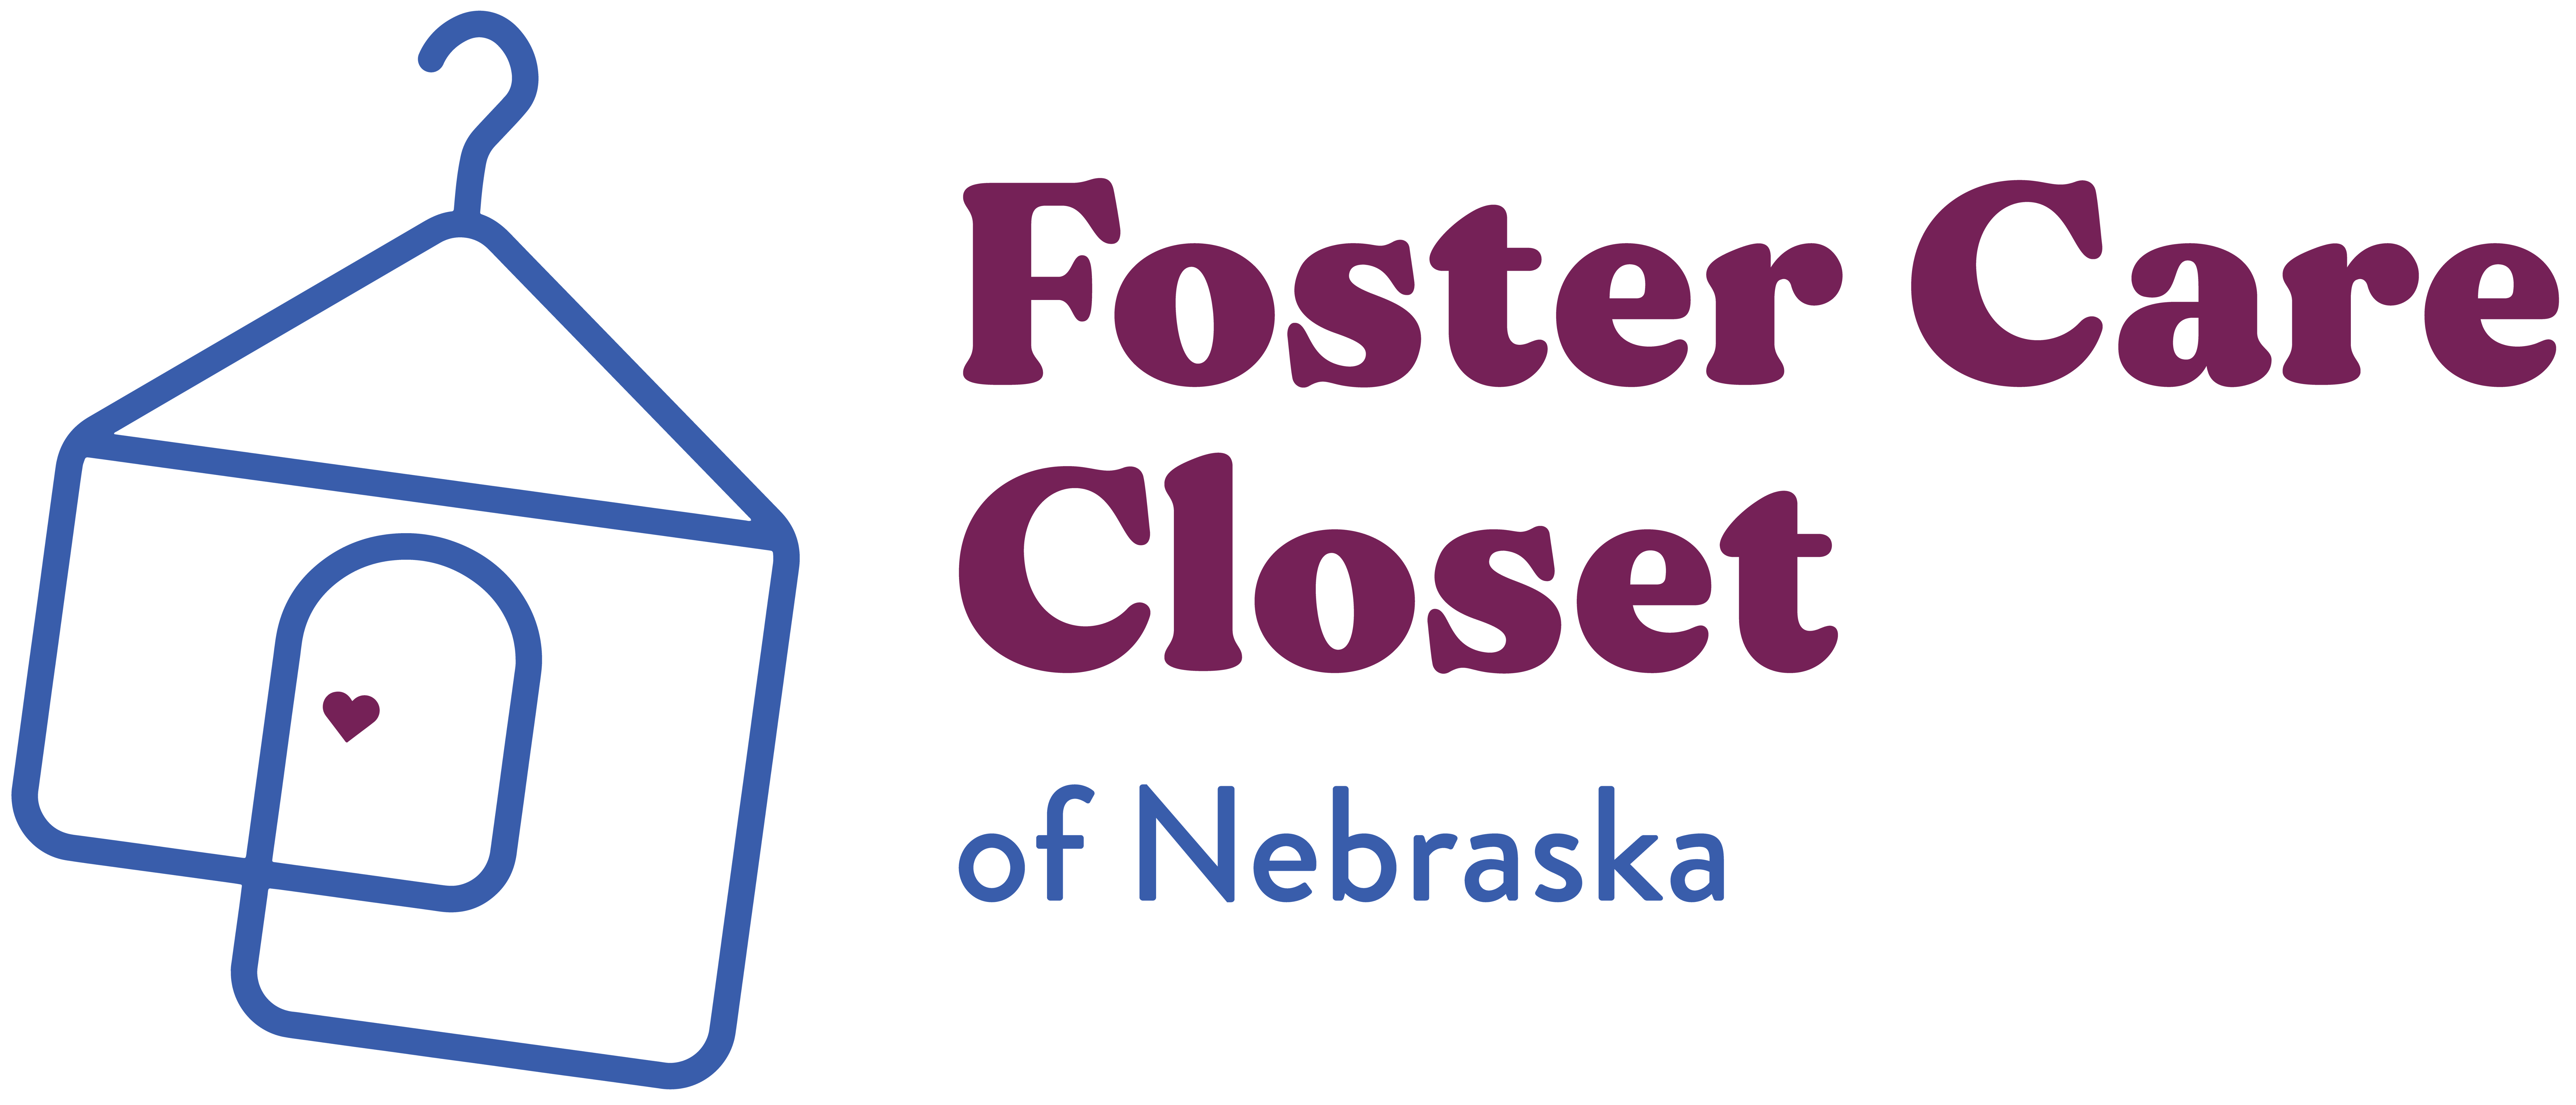 Foster Care Closet